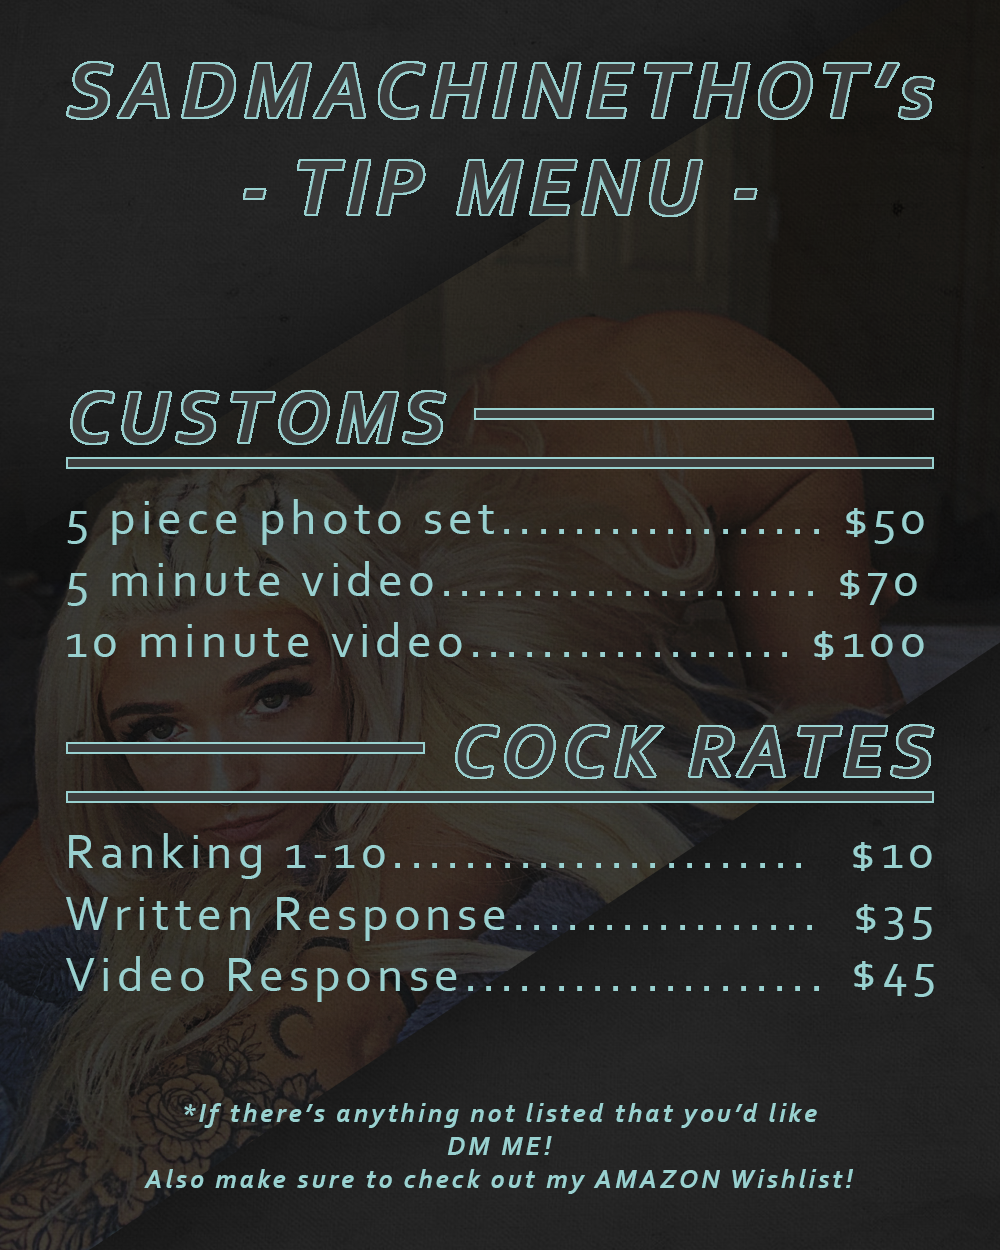 Tip menu for onlyfans